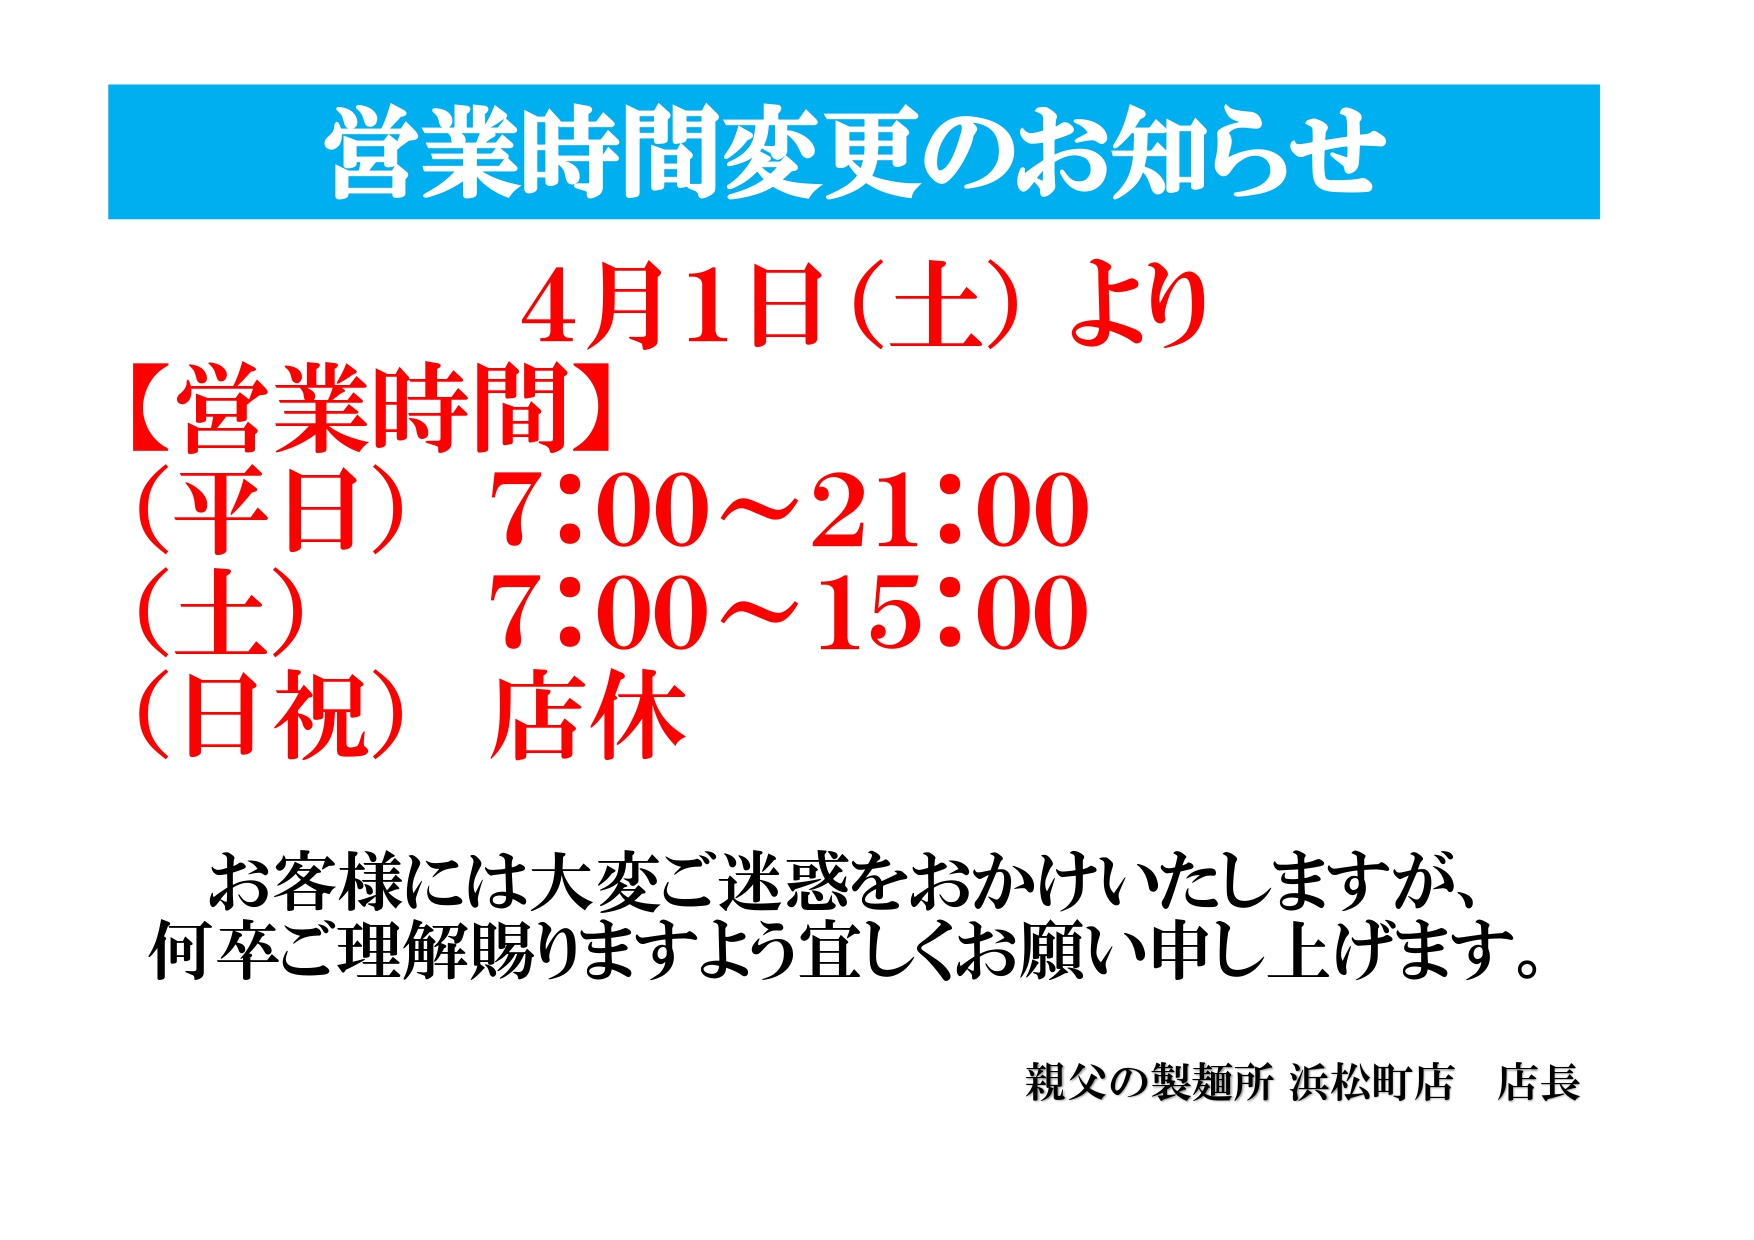 親父の製麺所 浜松町店開店時間変更2023.4.1_page-0001.jpg